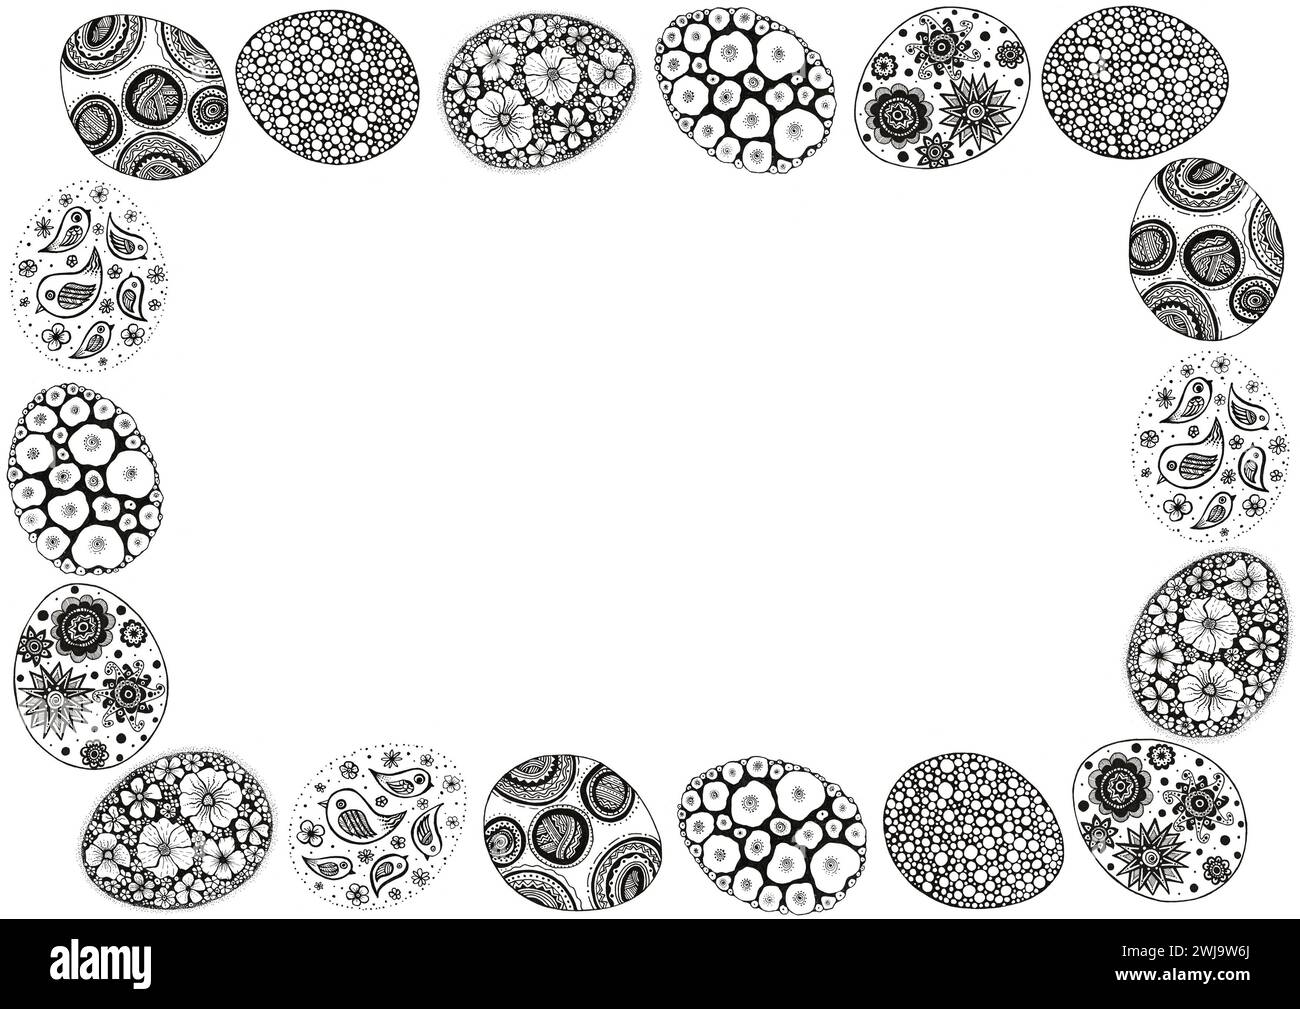 Rahmen von Ostereiern gefüllt mit verschiedenen Ornamenten. Schwarze Kontur auf weißem Hintergrund. Kritzeleien. Verzierung von Blumen, Vögeln, dekorativ und geometrisch Stockfoto